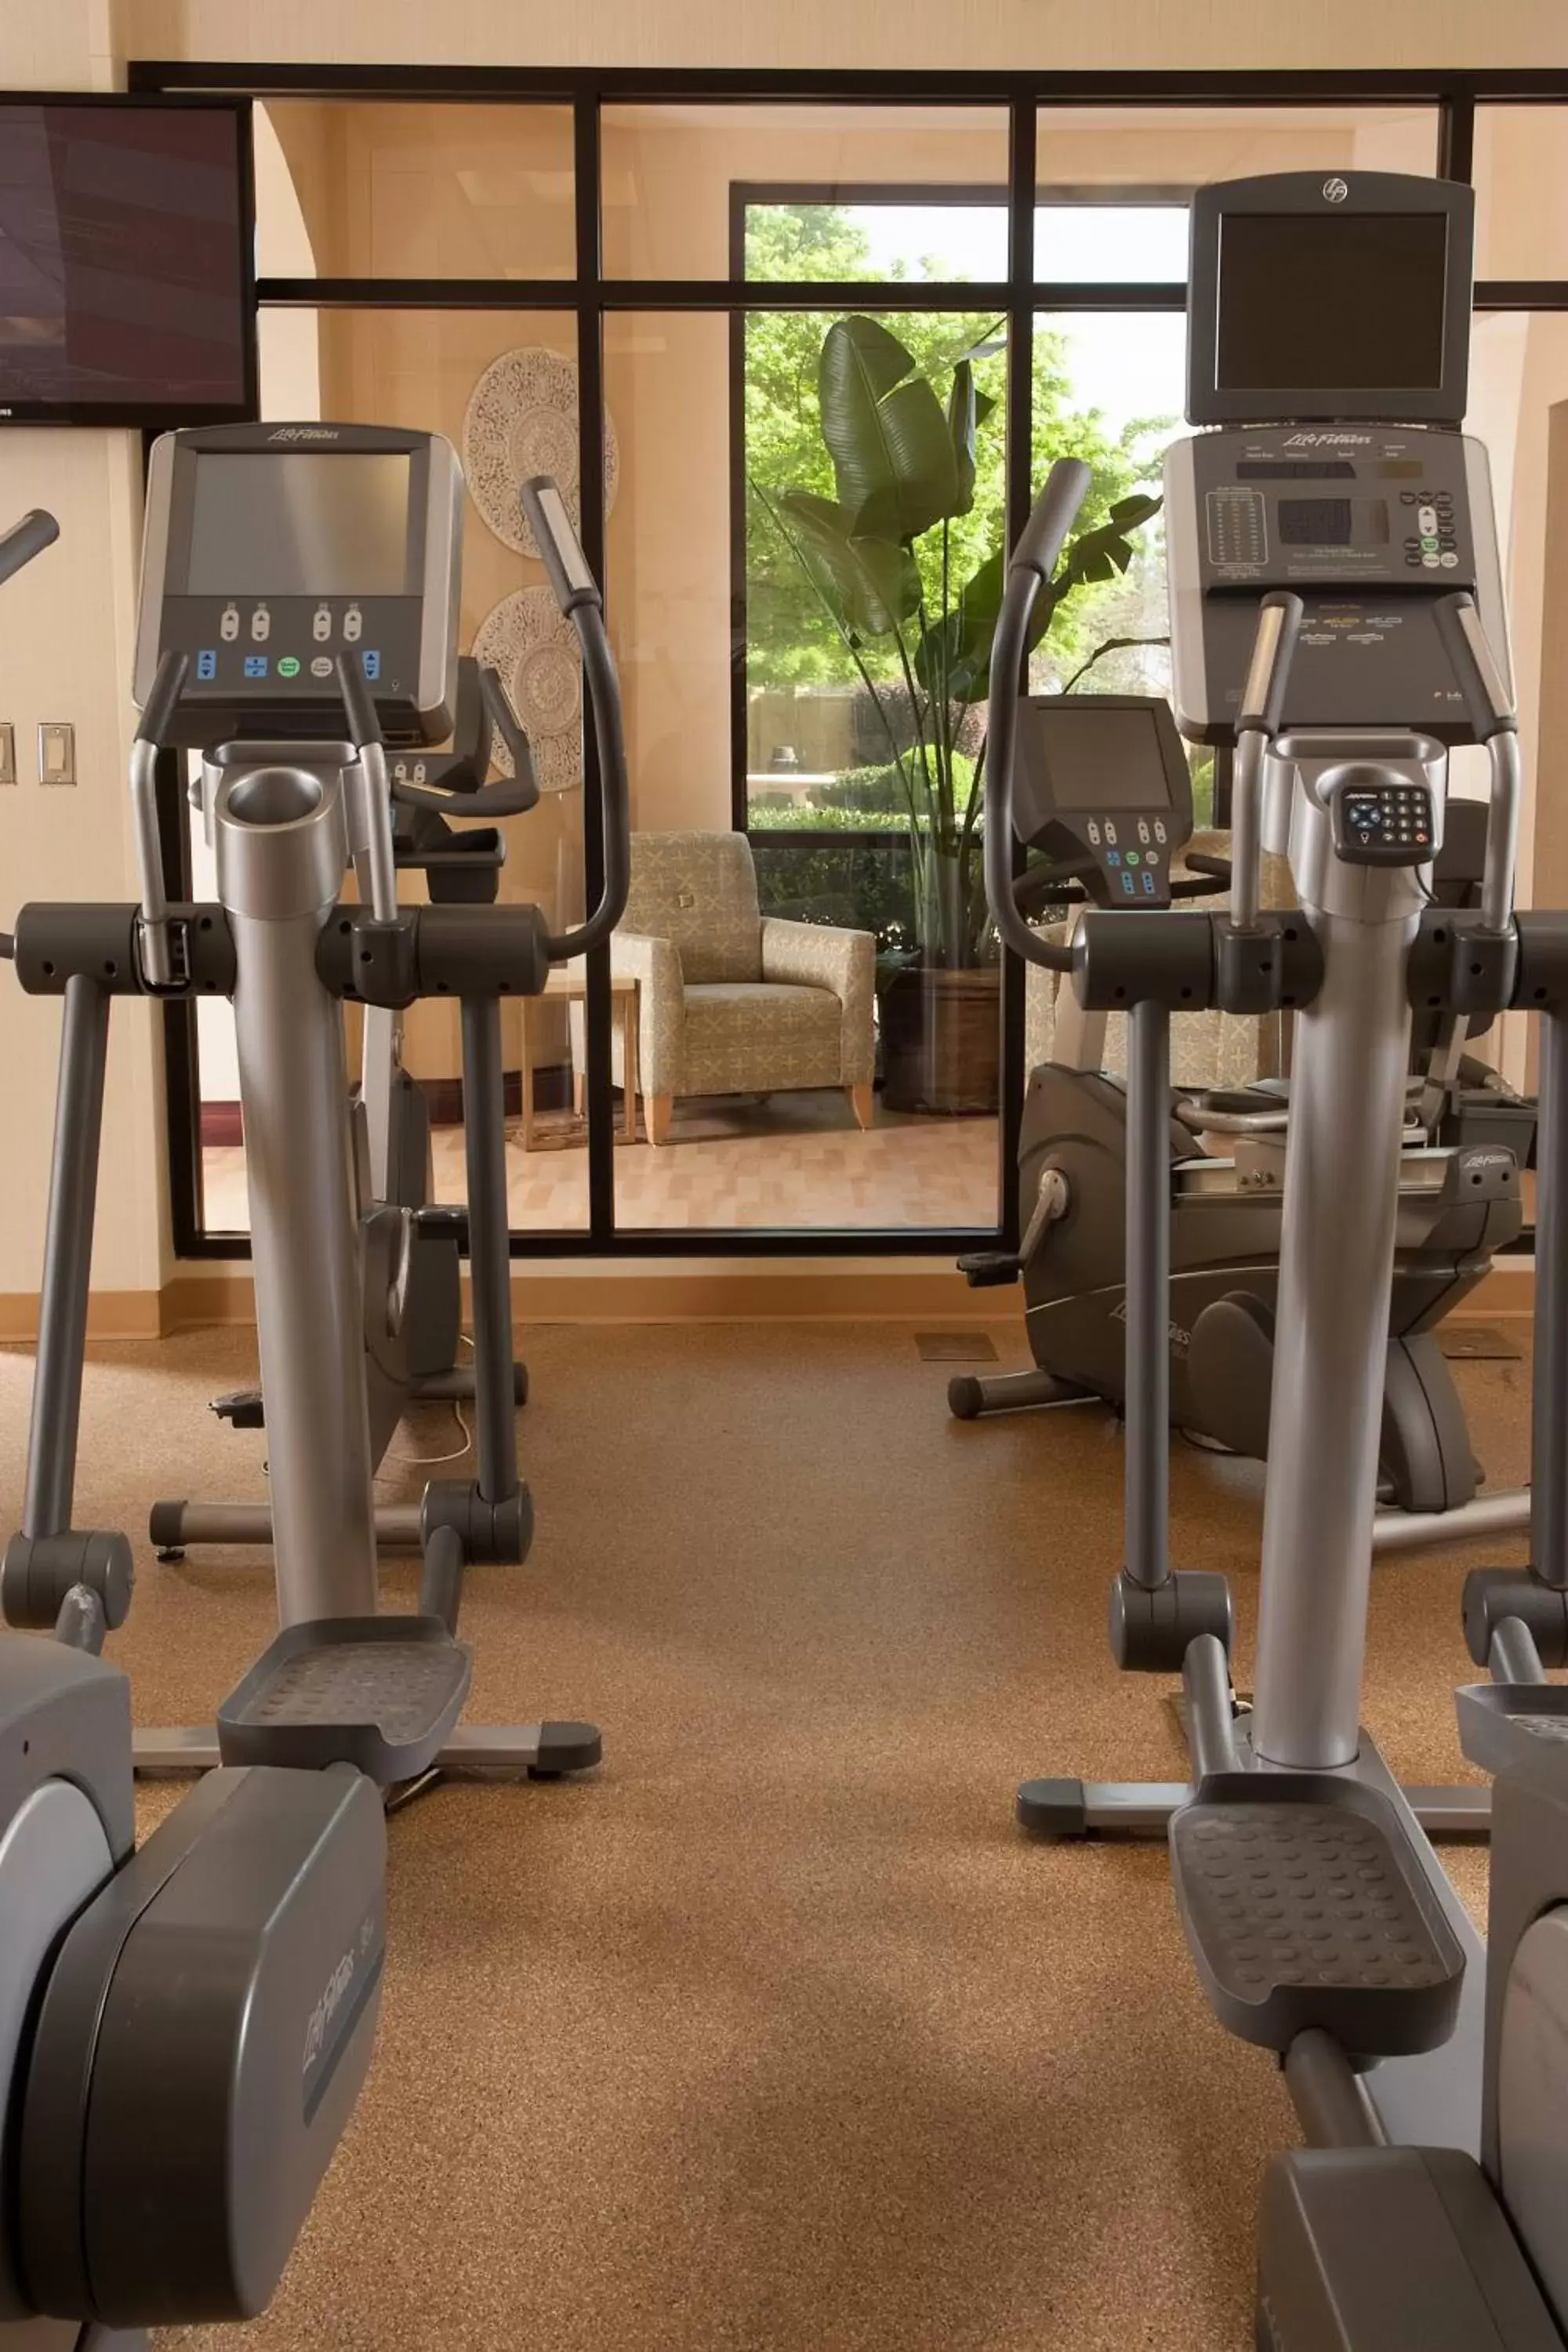 Fitness centre/facilities, Fitness Center/Facilities in Greenville Marriott